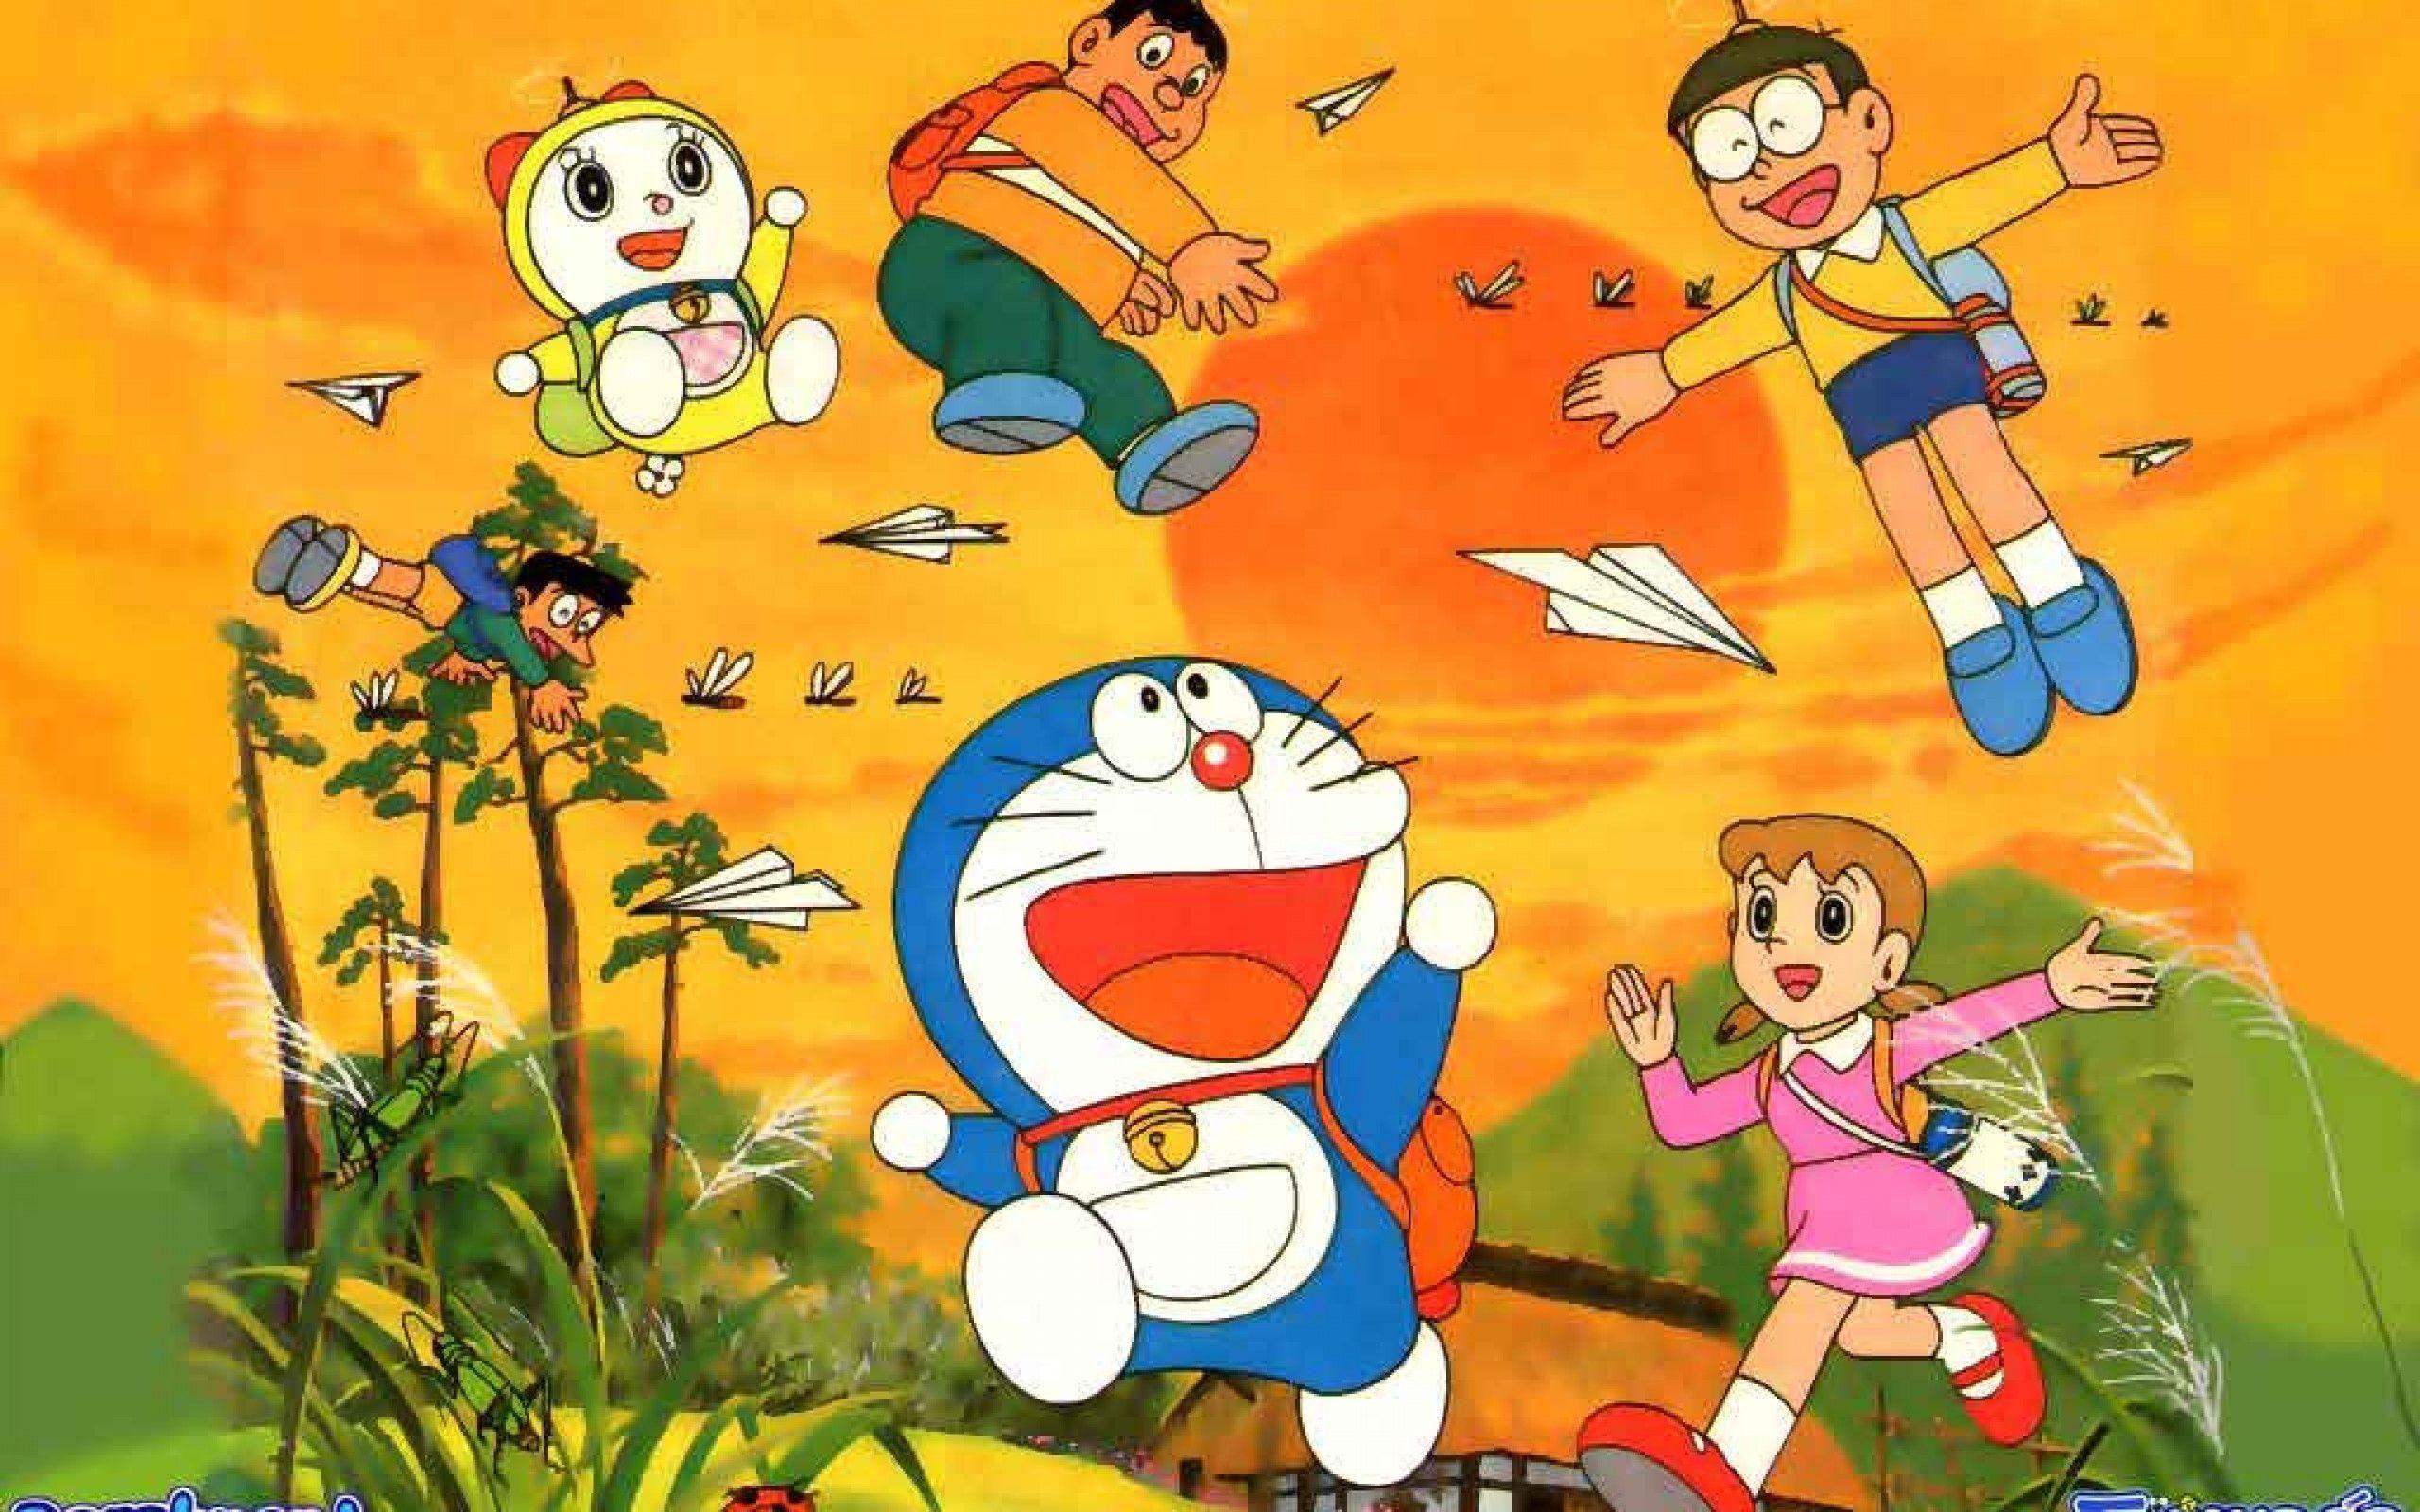 Doraemon Robot Wallpapers - hình nền Doraemon: Bạn là fan của Doraemon? Hãy tải ngay bộ sưu tập hình nền Doraemon Robot siêu đẹp để làm nền cho điện thoại của bạn nhé. Sự kết hợp giữa màn hình điện thoại và nhân vật Doraemon sẽ cho bạn sự thú vị và hứng khởi trong cuộc sống.